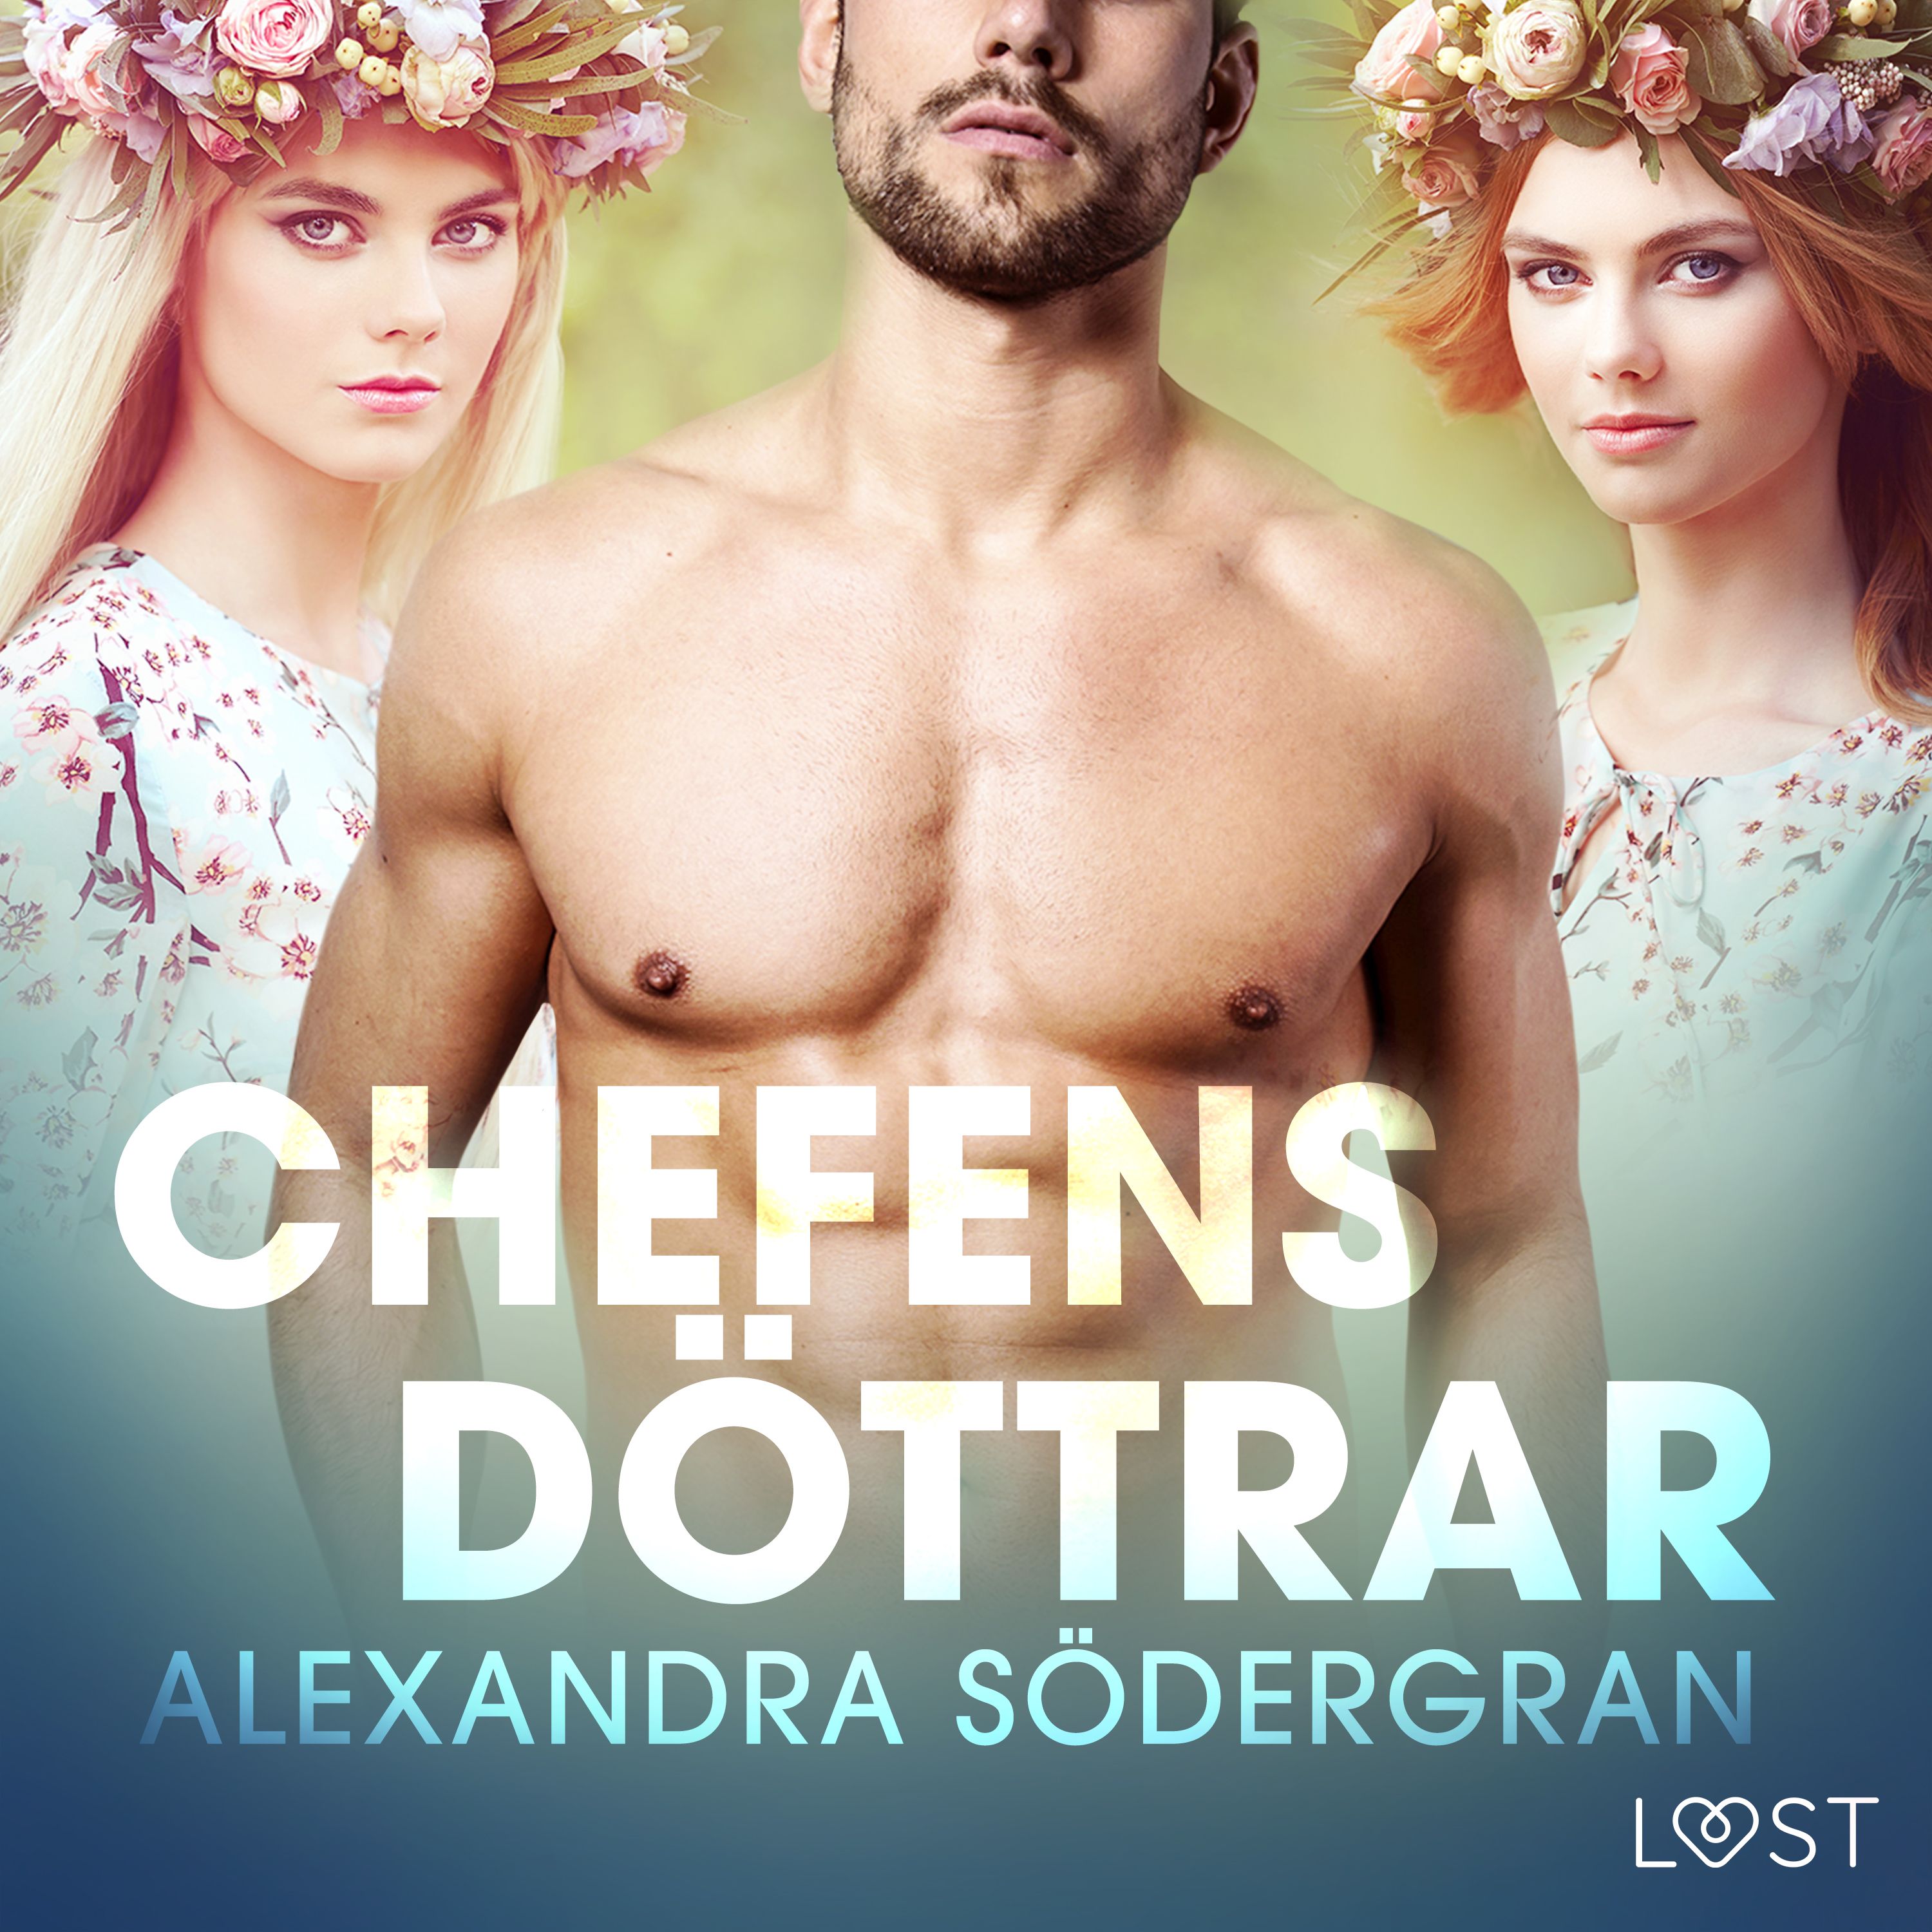 Chefens döttrar - erotisk midsommar novell, ljudbok av Alexandra Södergran